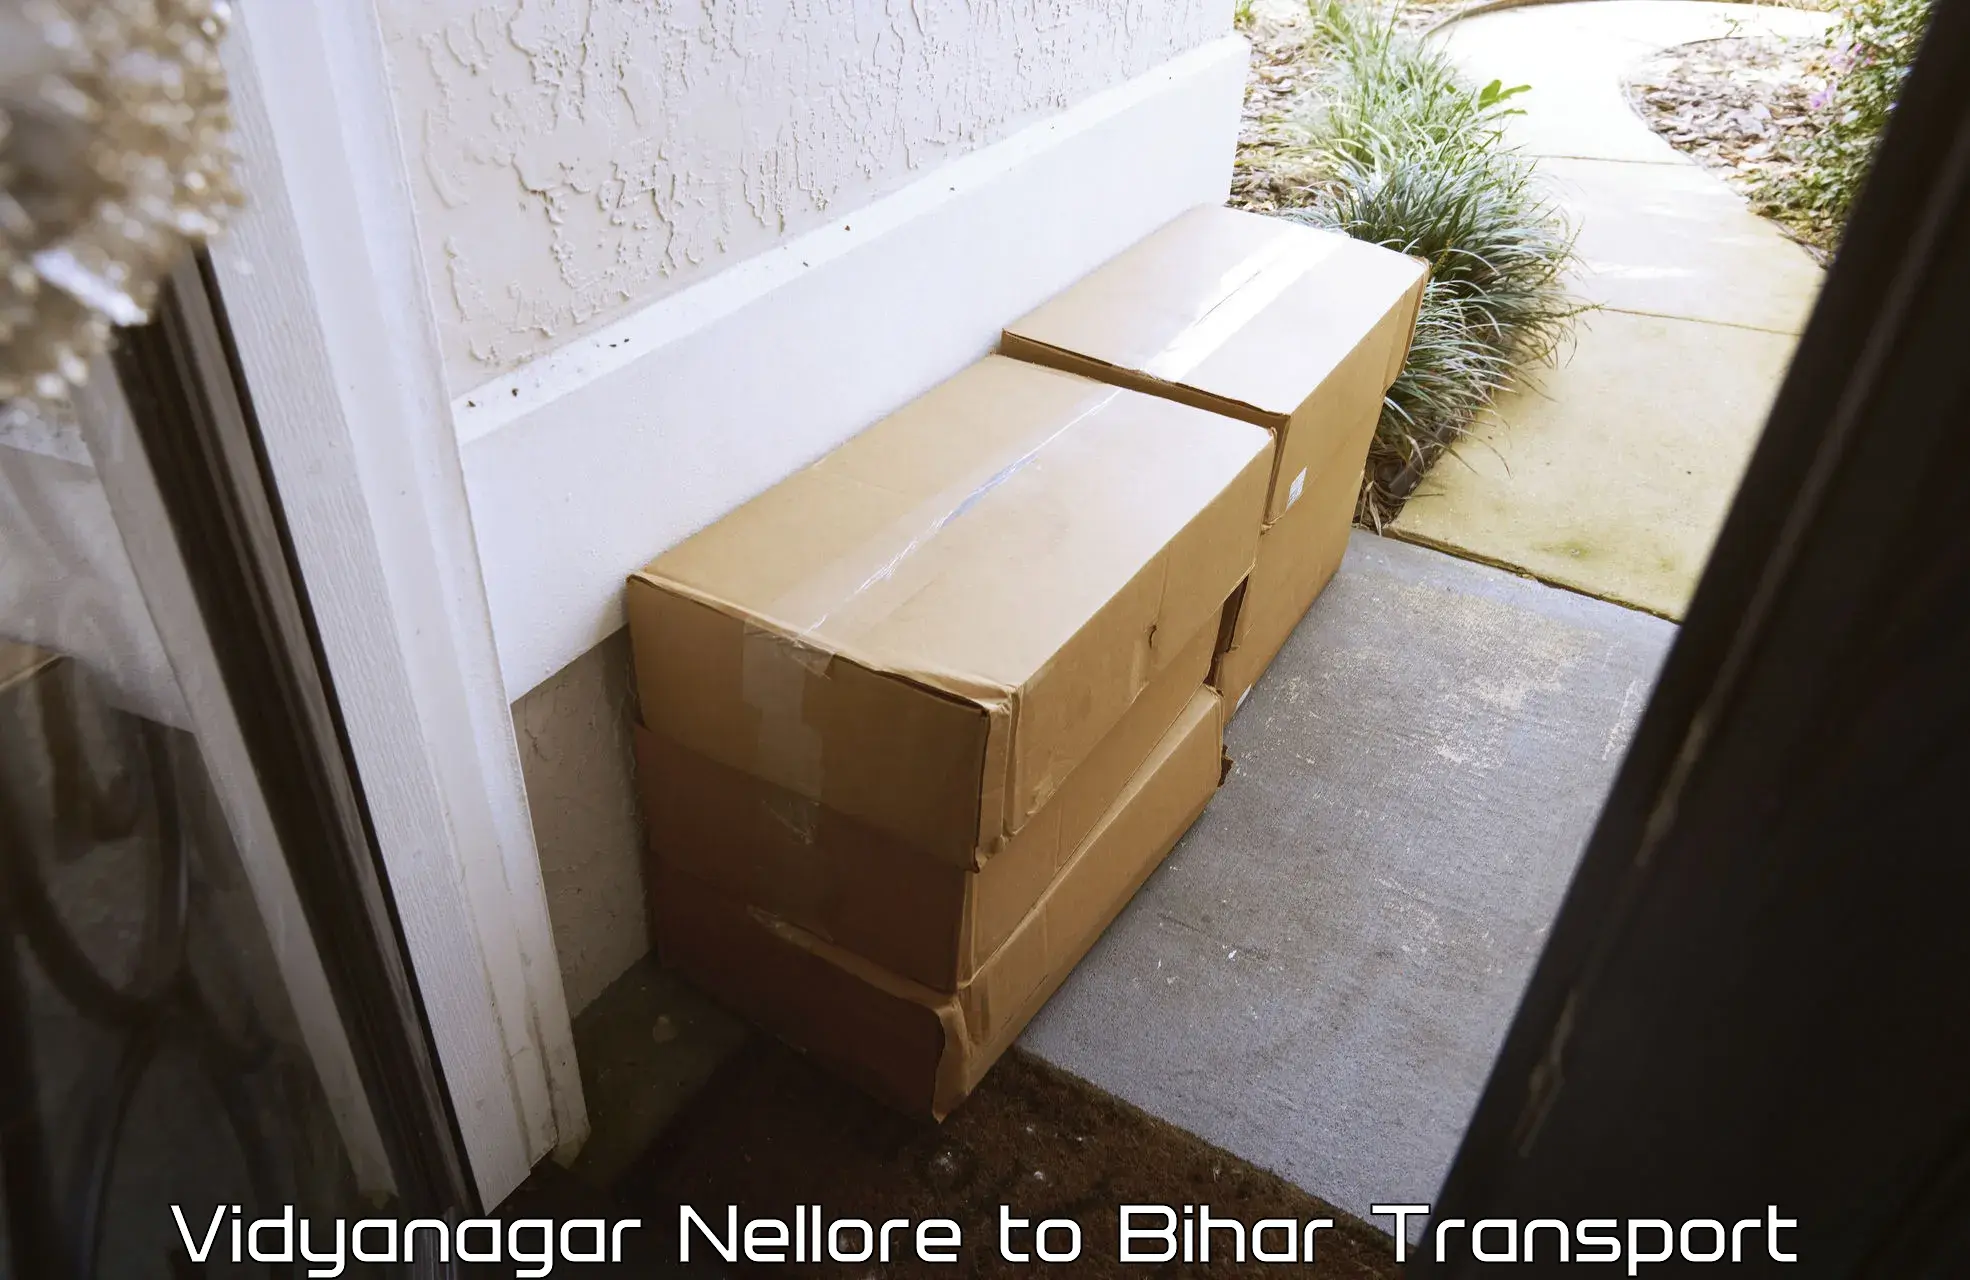 Goods transport services Vidyanagar Nellore to Chainpur